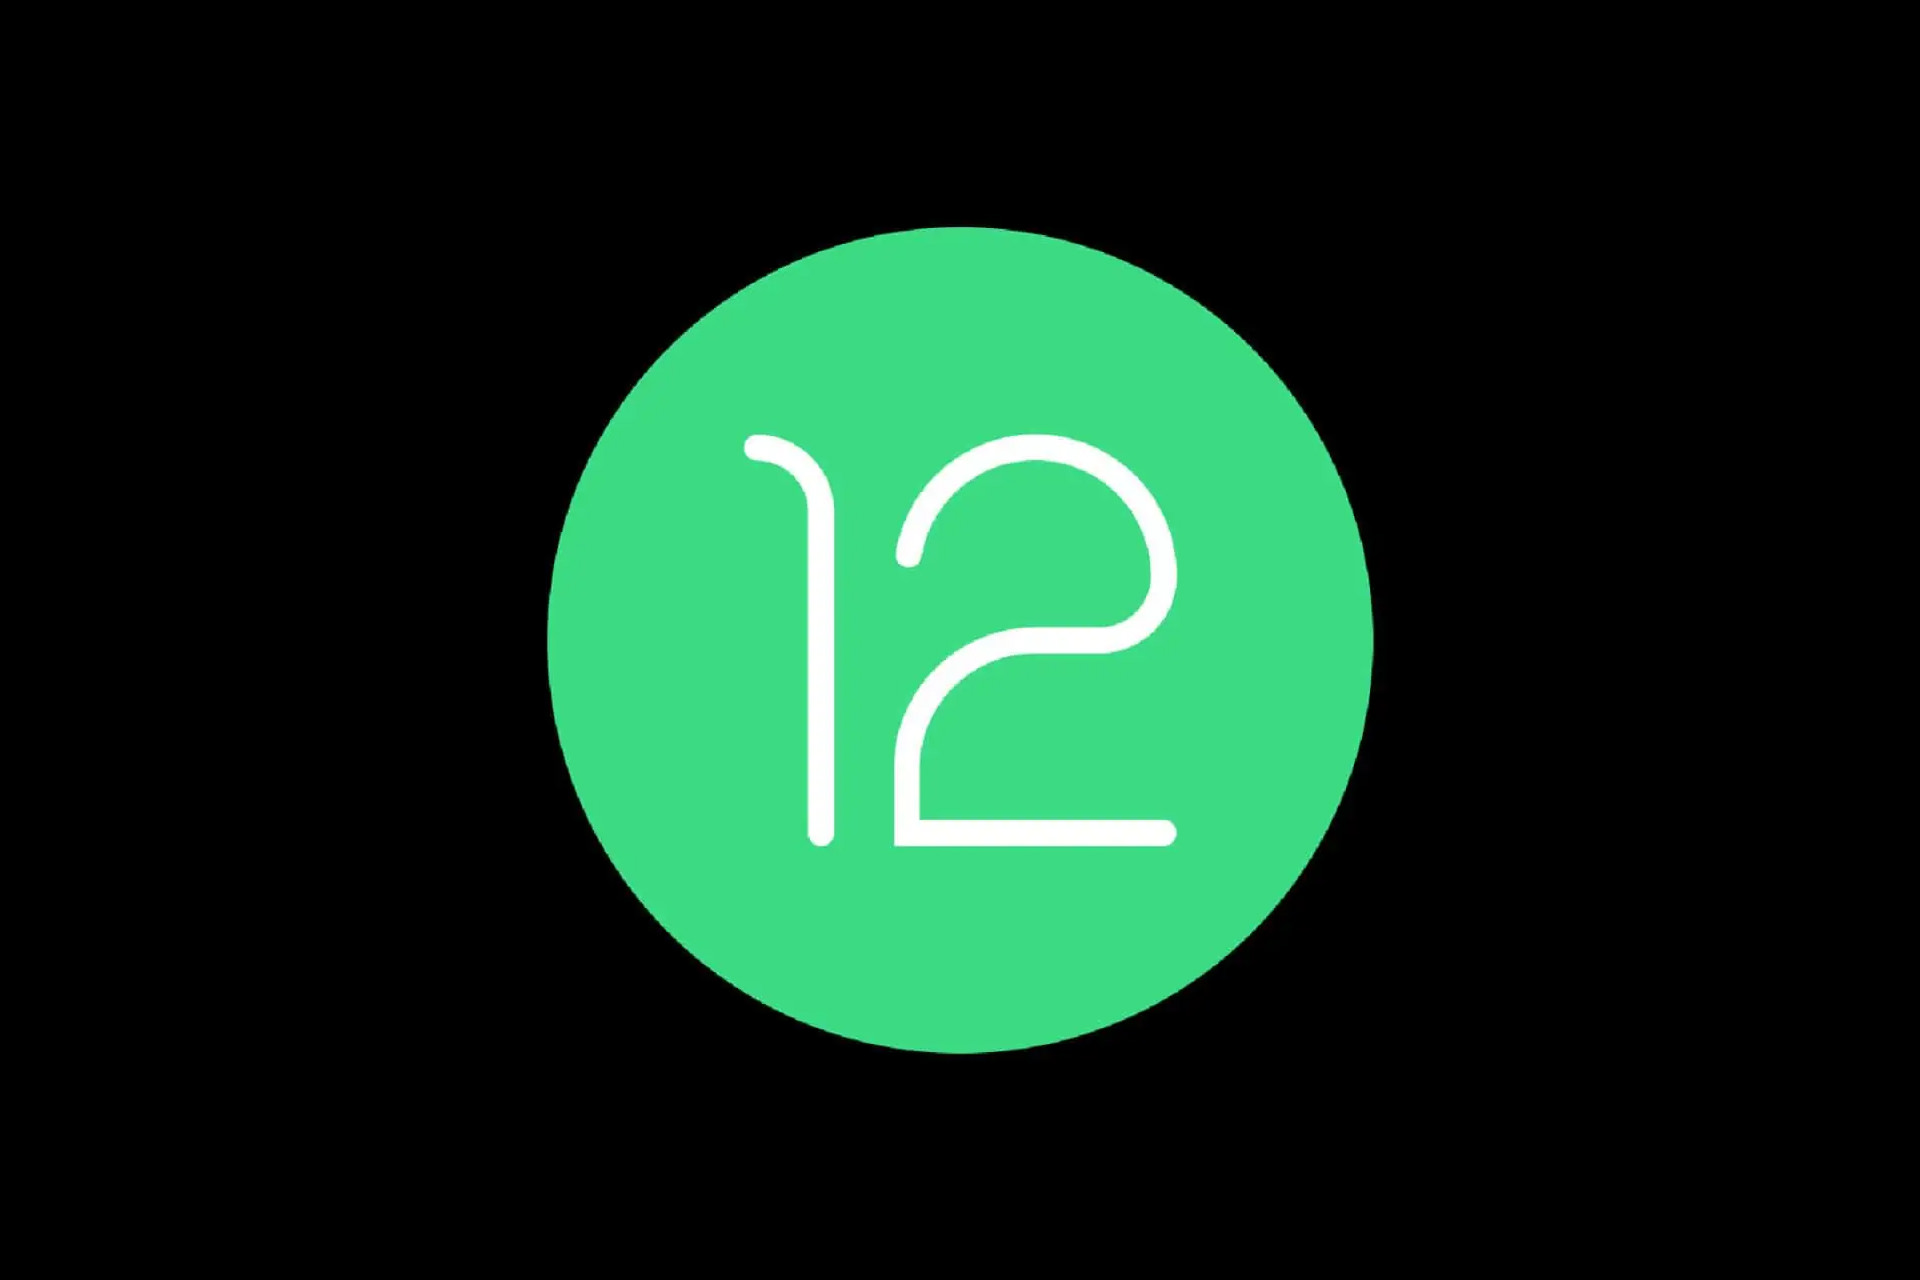 لوگو اولیه اندروید ۱۲ / Android 12 گوگل در پس زمینه مشکی